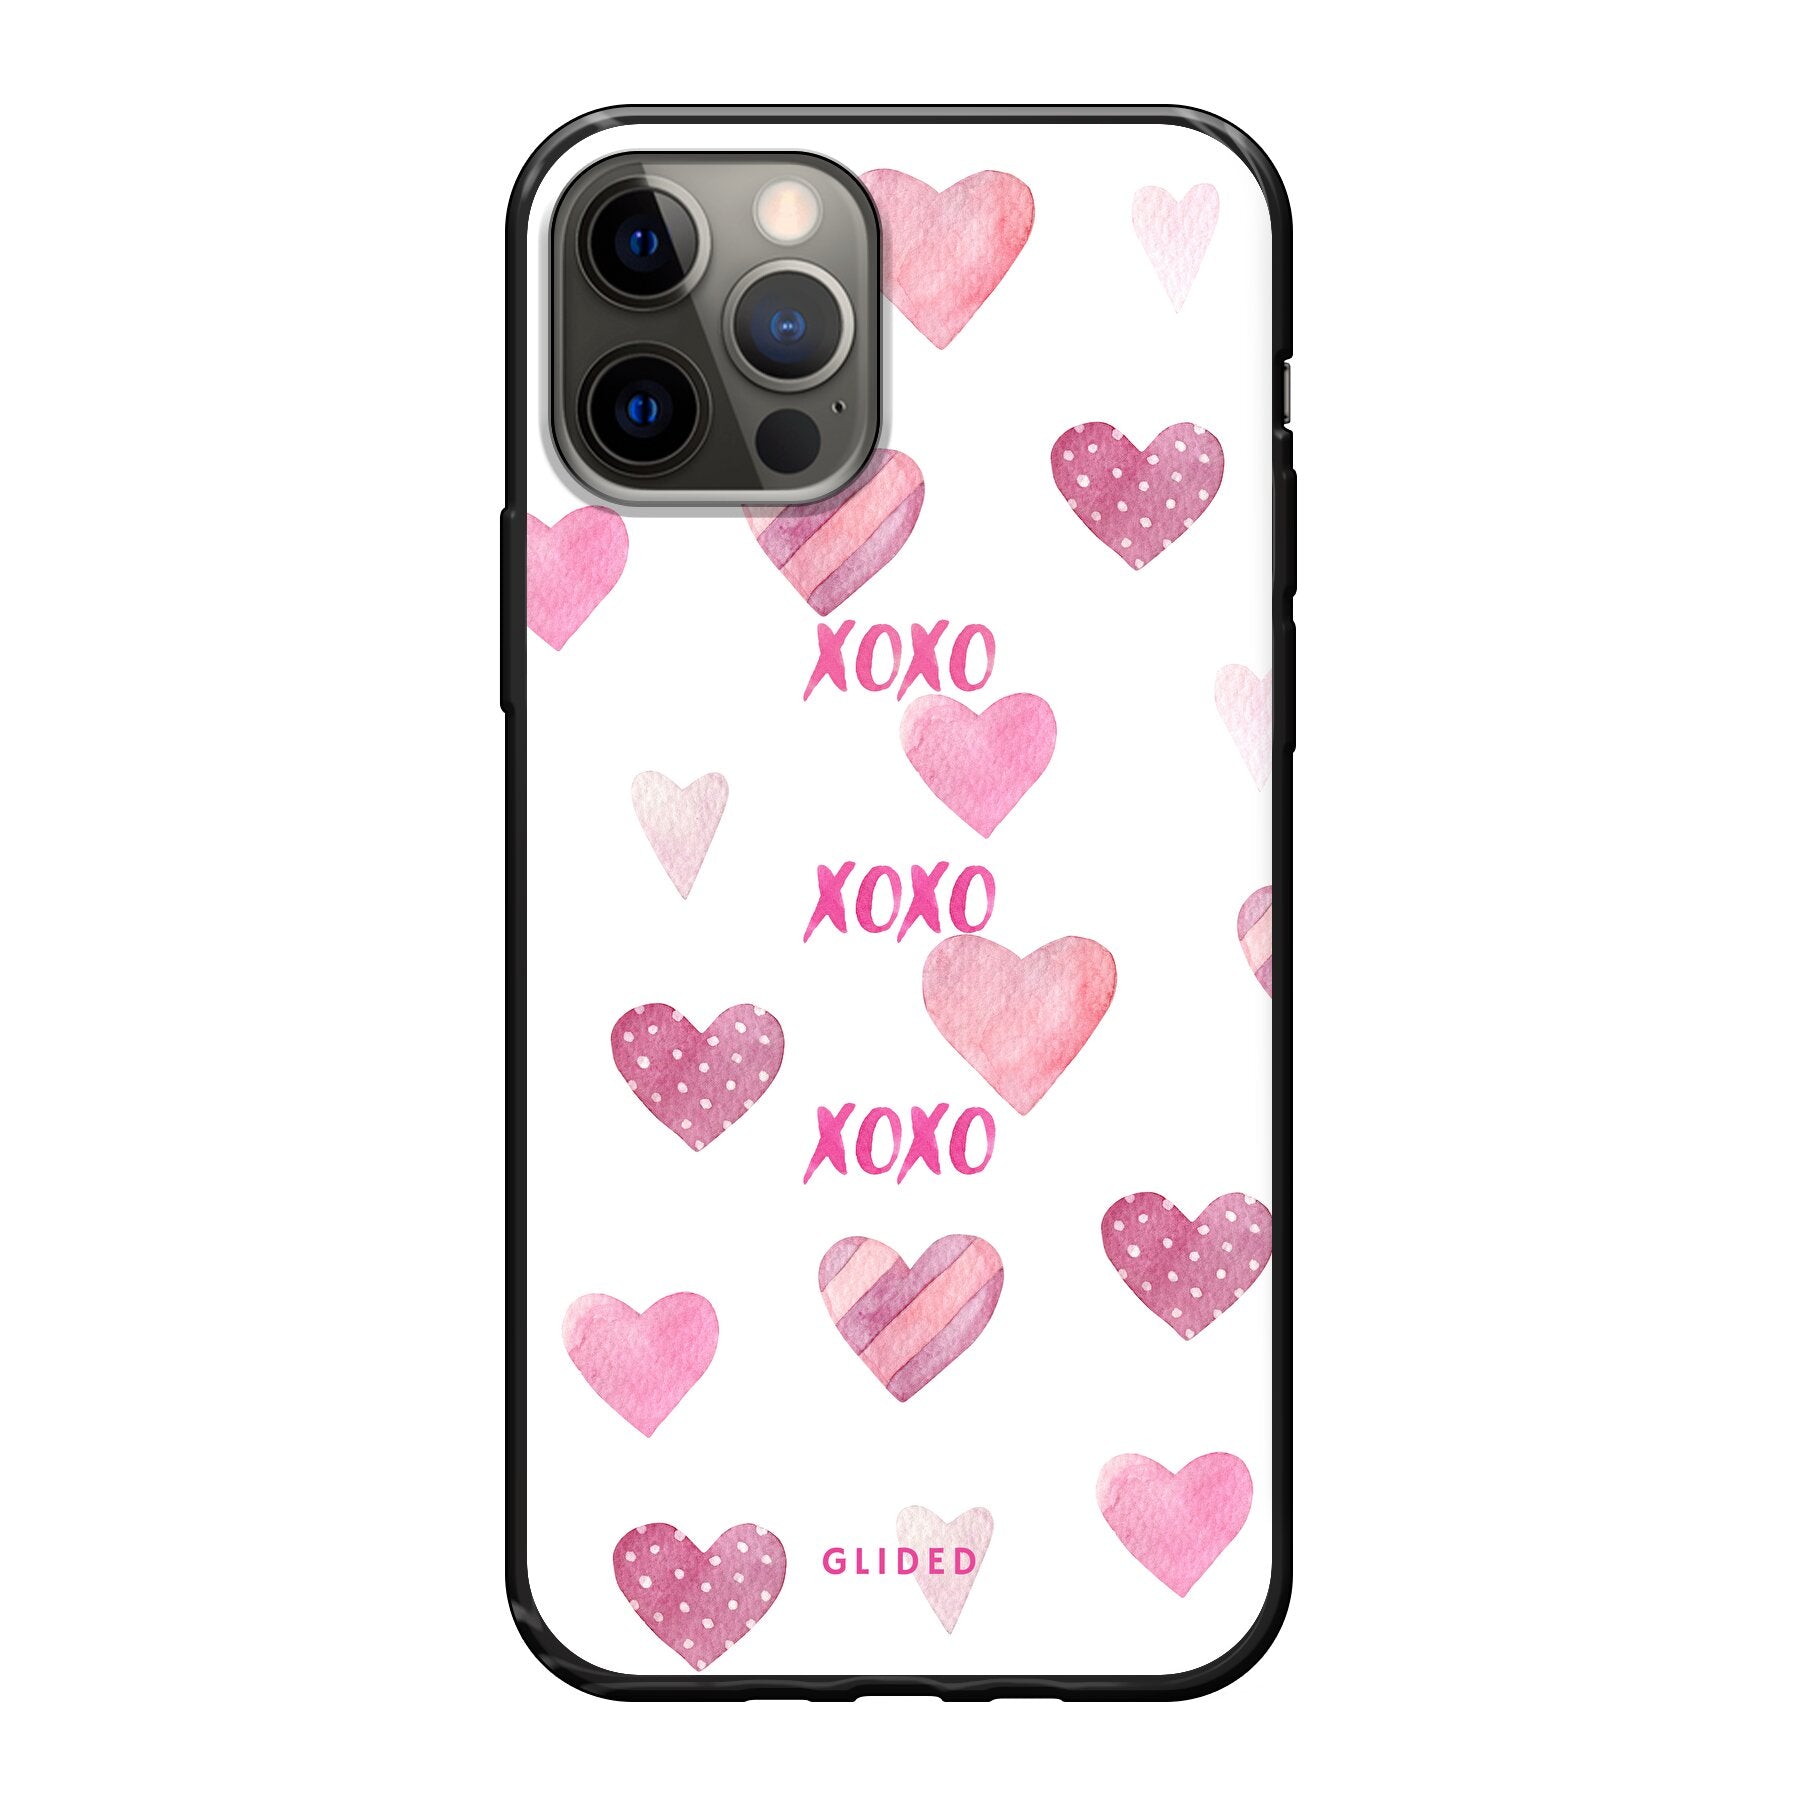 Xoxo - iPhone 12 Pro - Soft case